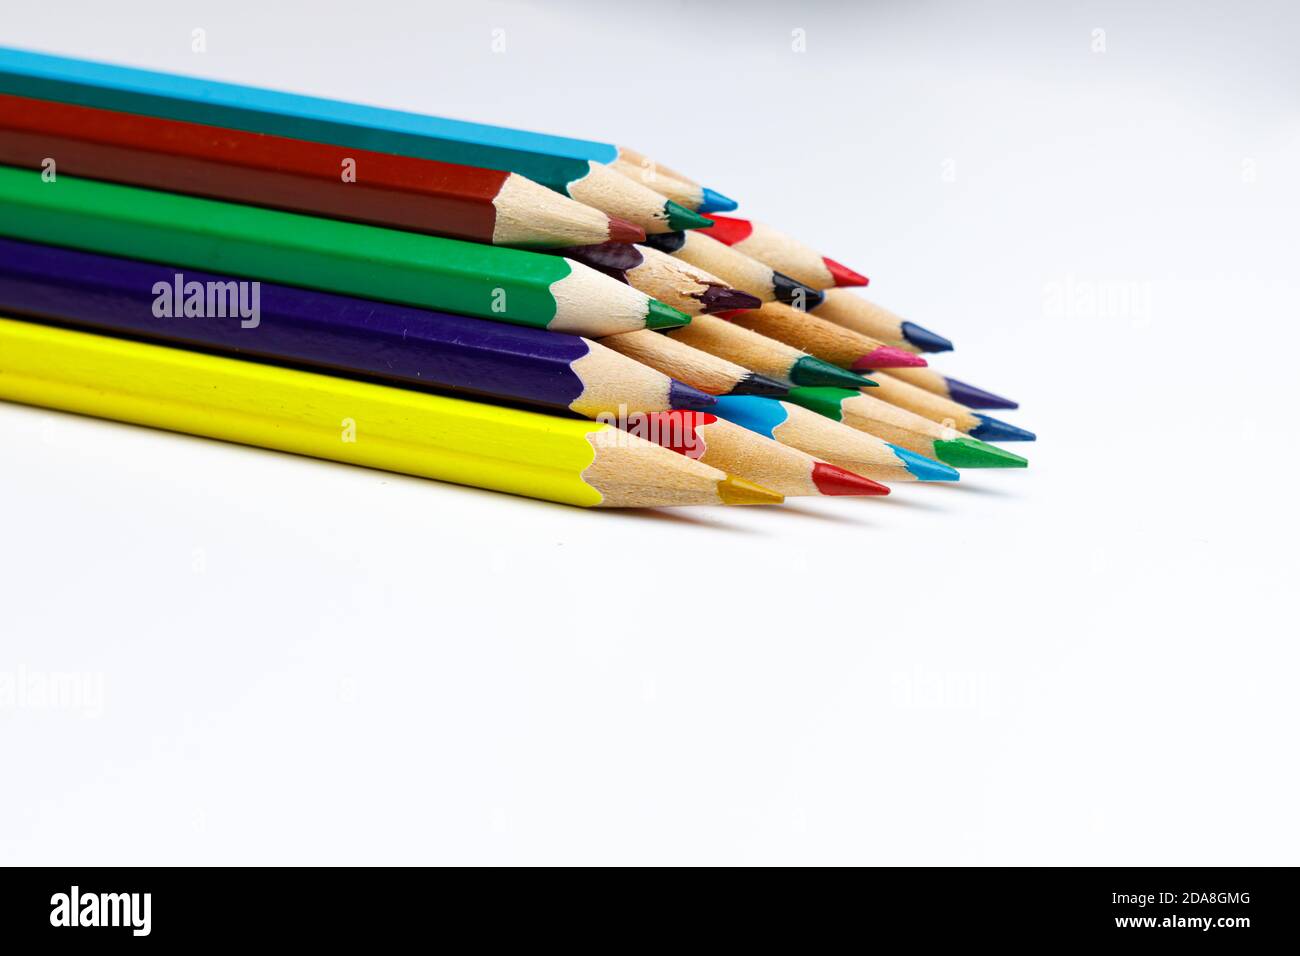 Vue en perspective des crayons de couleur empilés avec espace withe pour le texte personnalisé, pour les présentations powerpoint ou les sites Web Banque D'Images